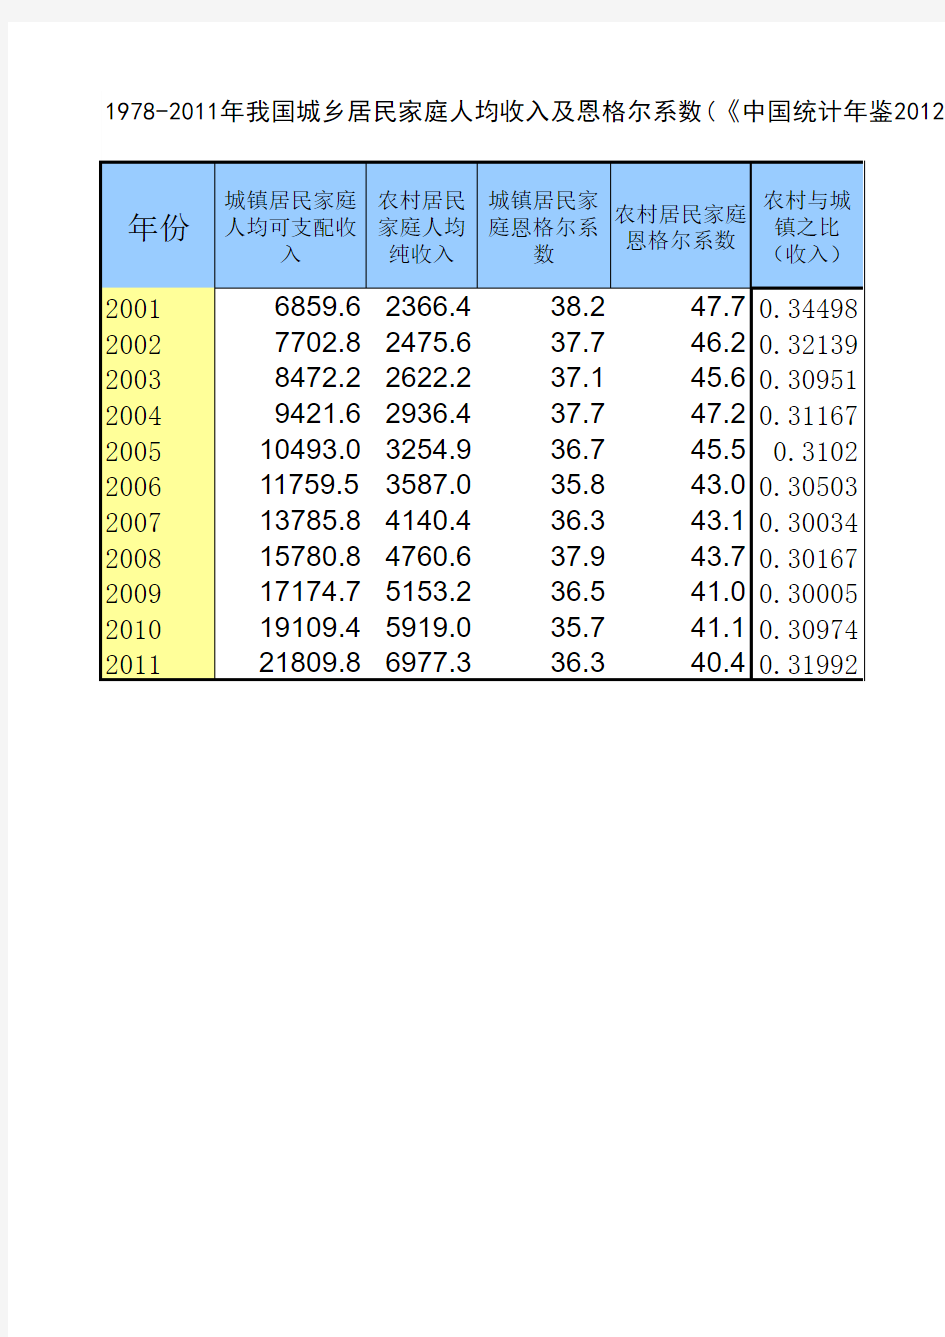 1978-2011年我国城乡居民家庭人均收入及恩格尔系数(《中国统计年鉴2012》之表10-2)